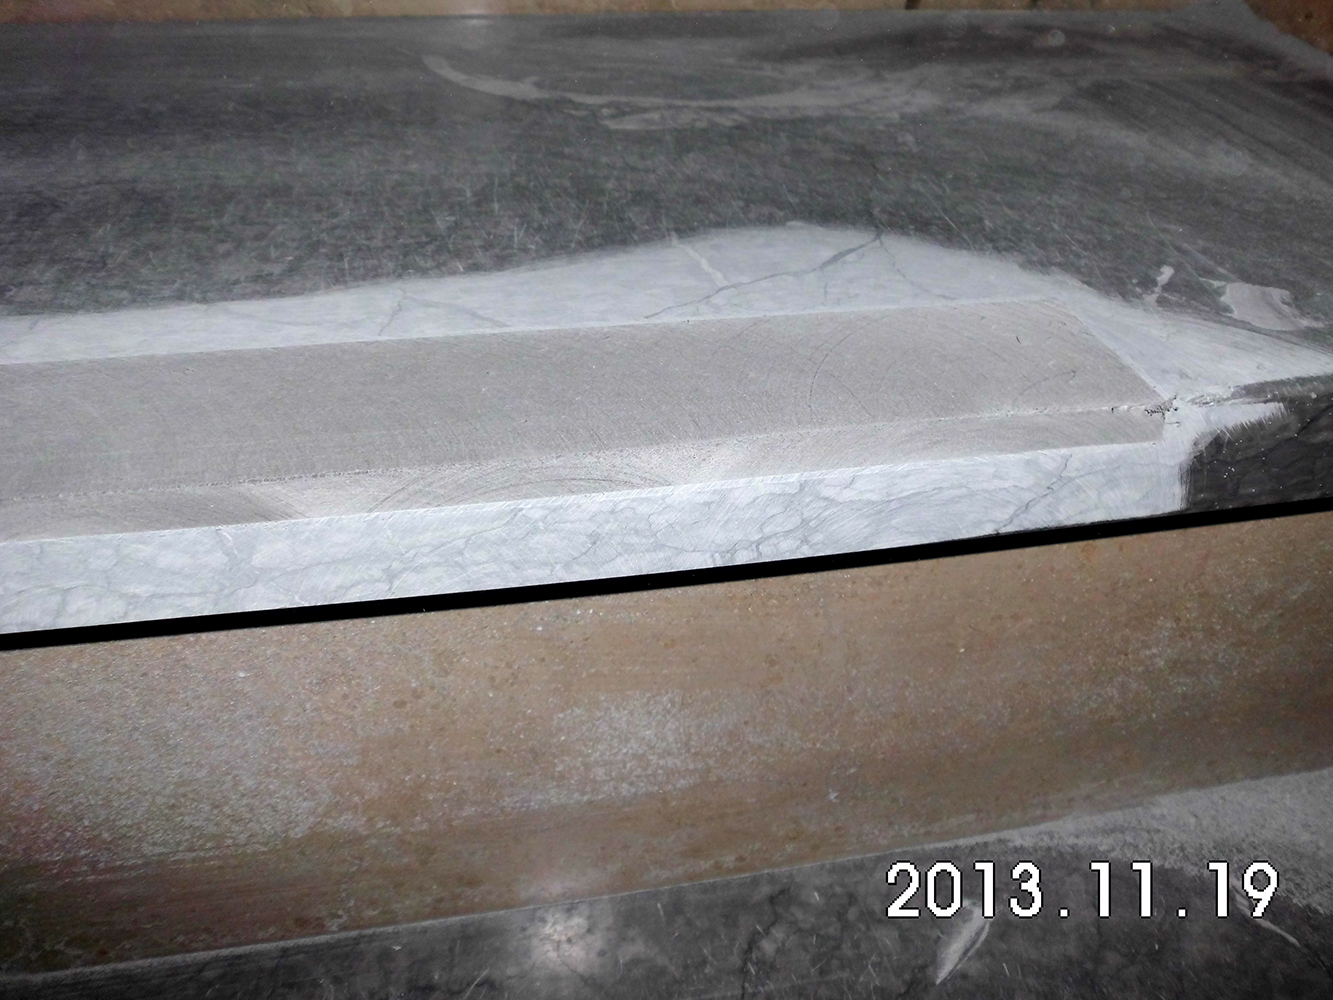 Bild: Tekoschienen, PVC Trittsicherheitskante, Reparaturkante 511 oder Olbrich 310 waehrend dem Austausch durch Naturstein Biermann